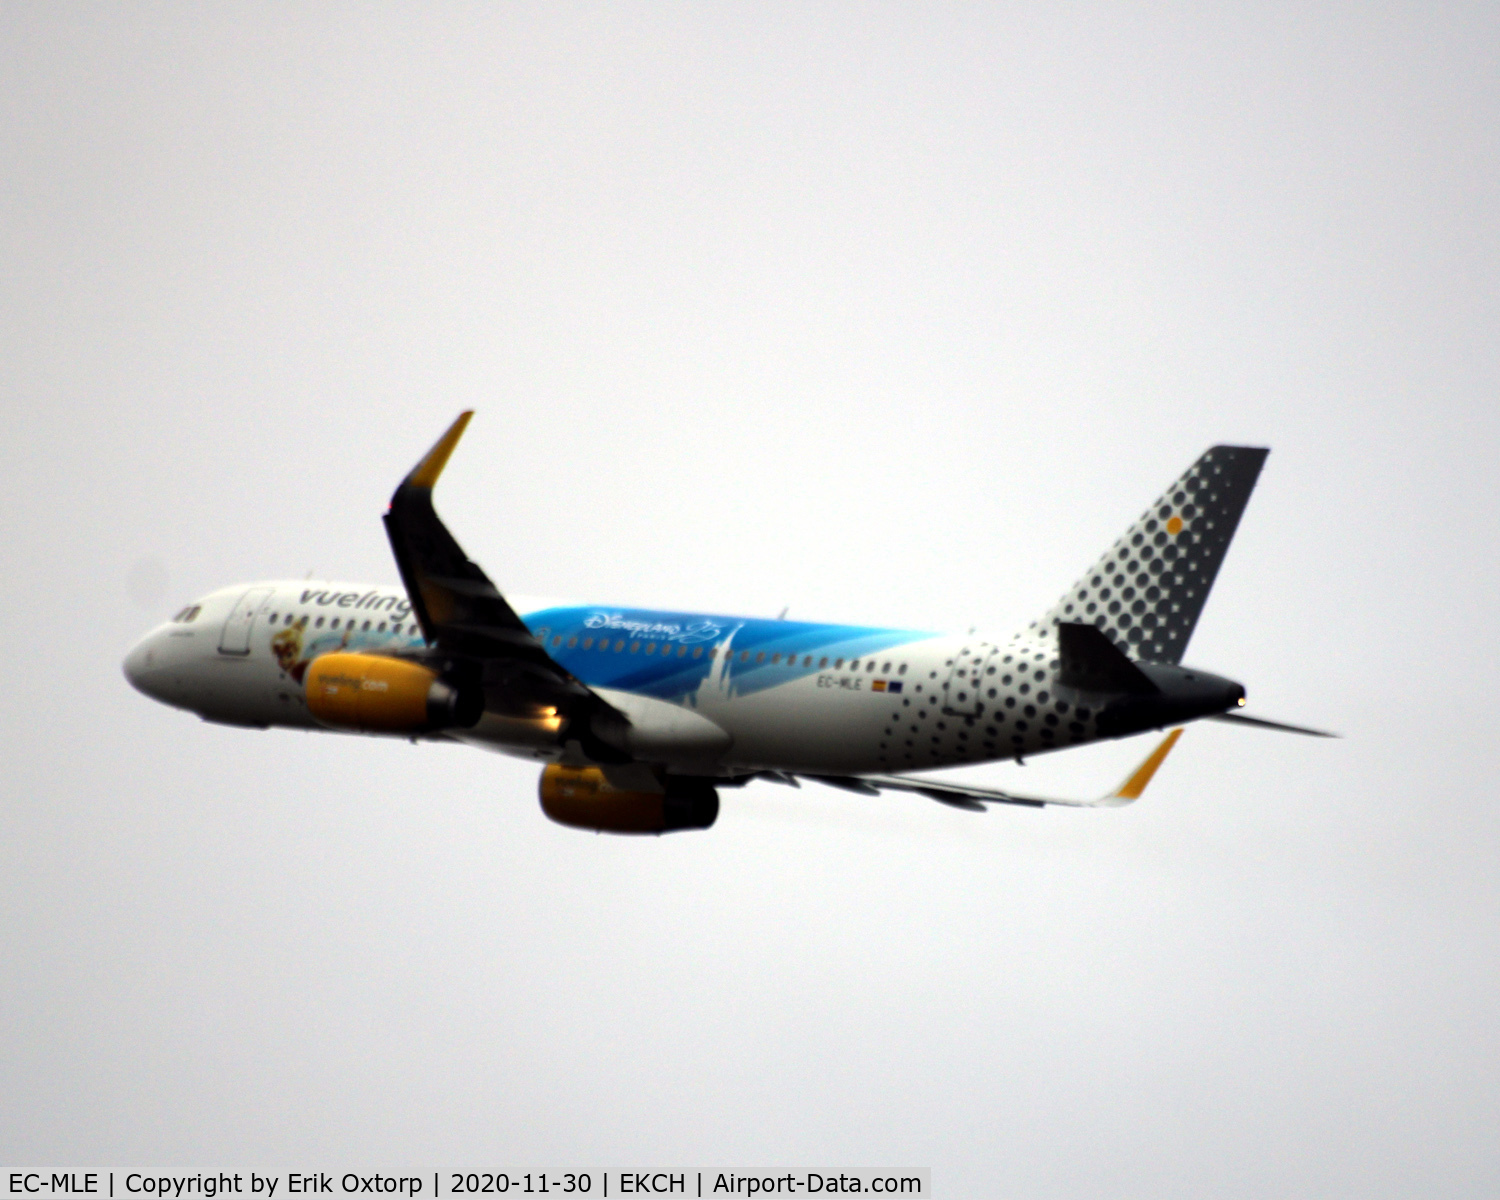 EC-MLE, 2016 Airbus A320-232 C/N 7109, EC-MLE taking off rw 22R